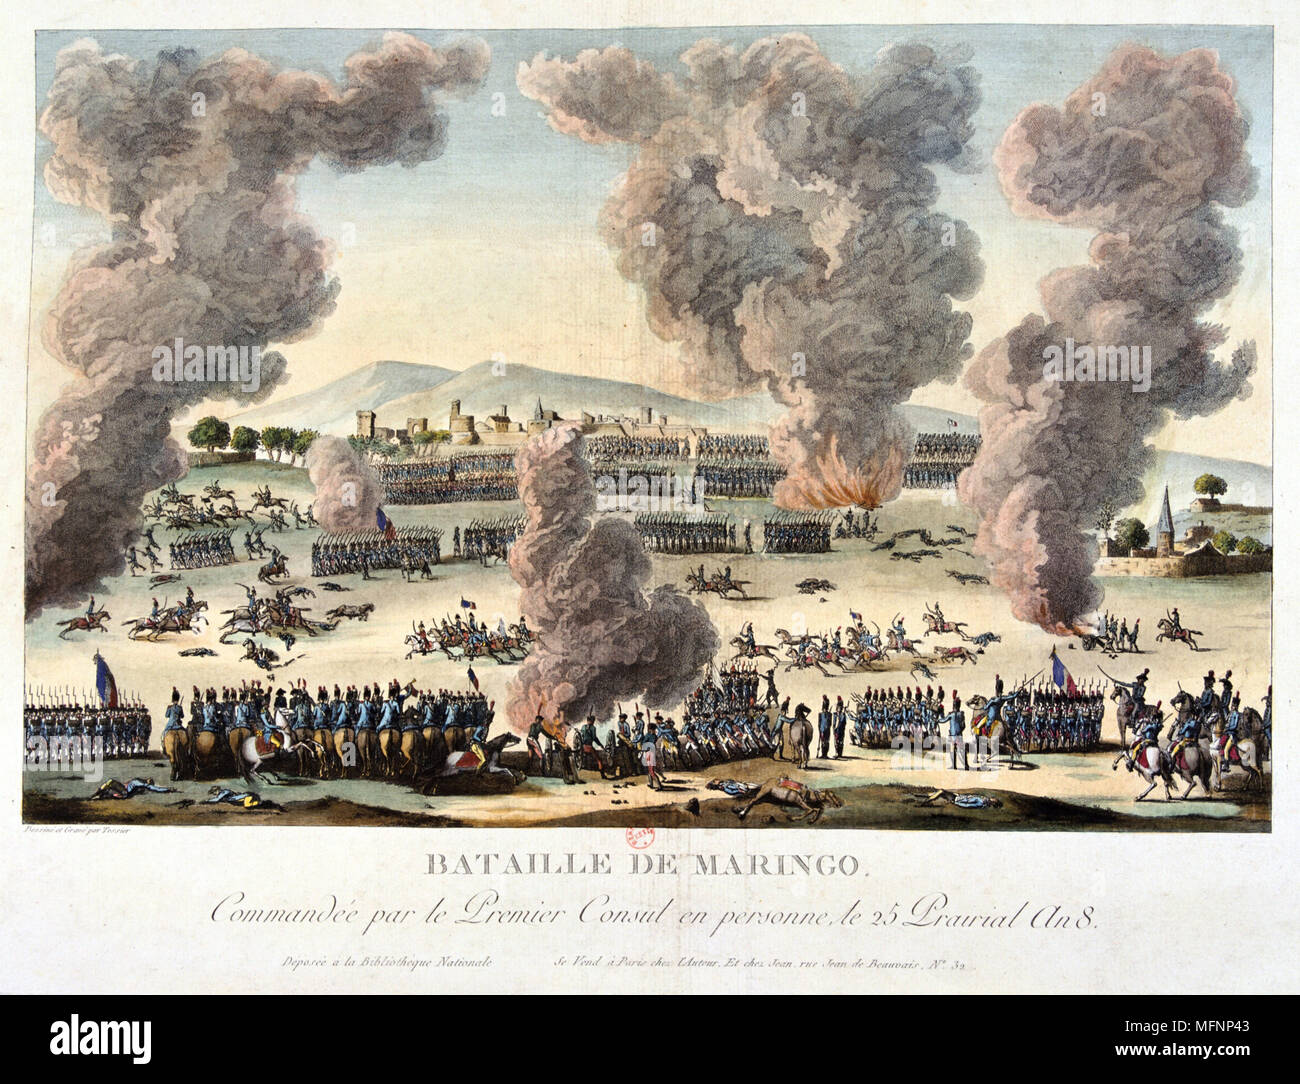 La bataille de Marengo, le 14 juin 1800. Les forces françaises sous Napoléon défait les autrichiens. Lithographie en couleur. Banque D'Images